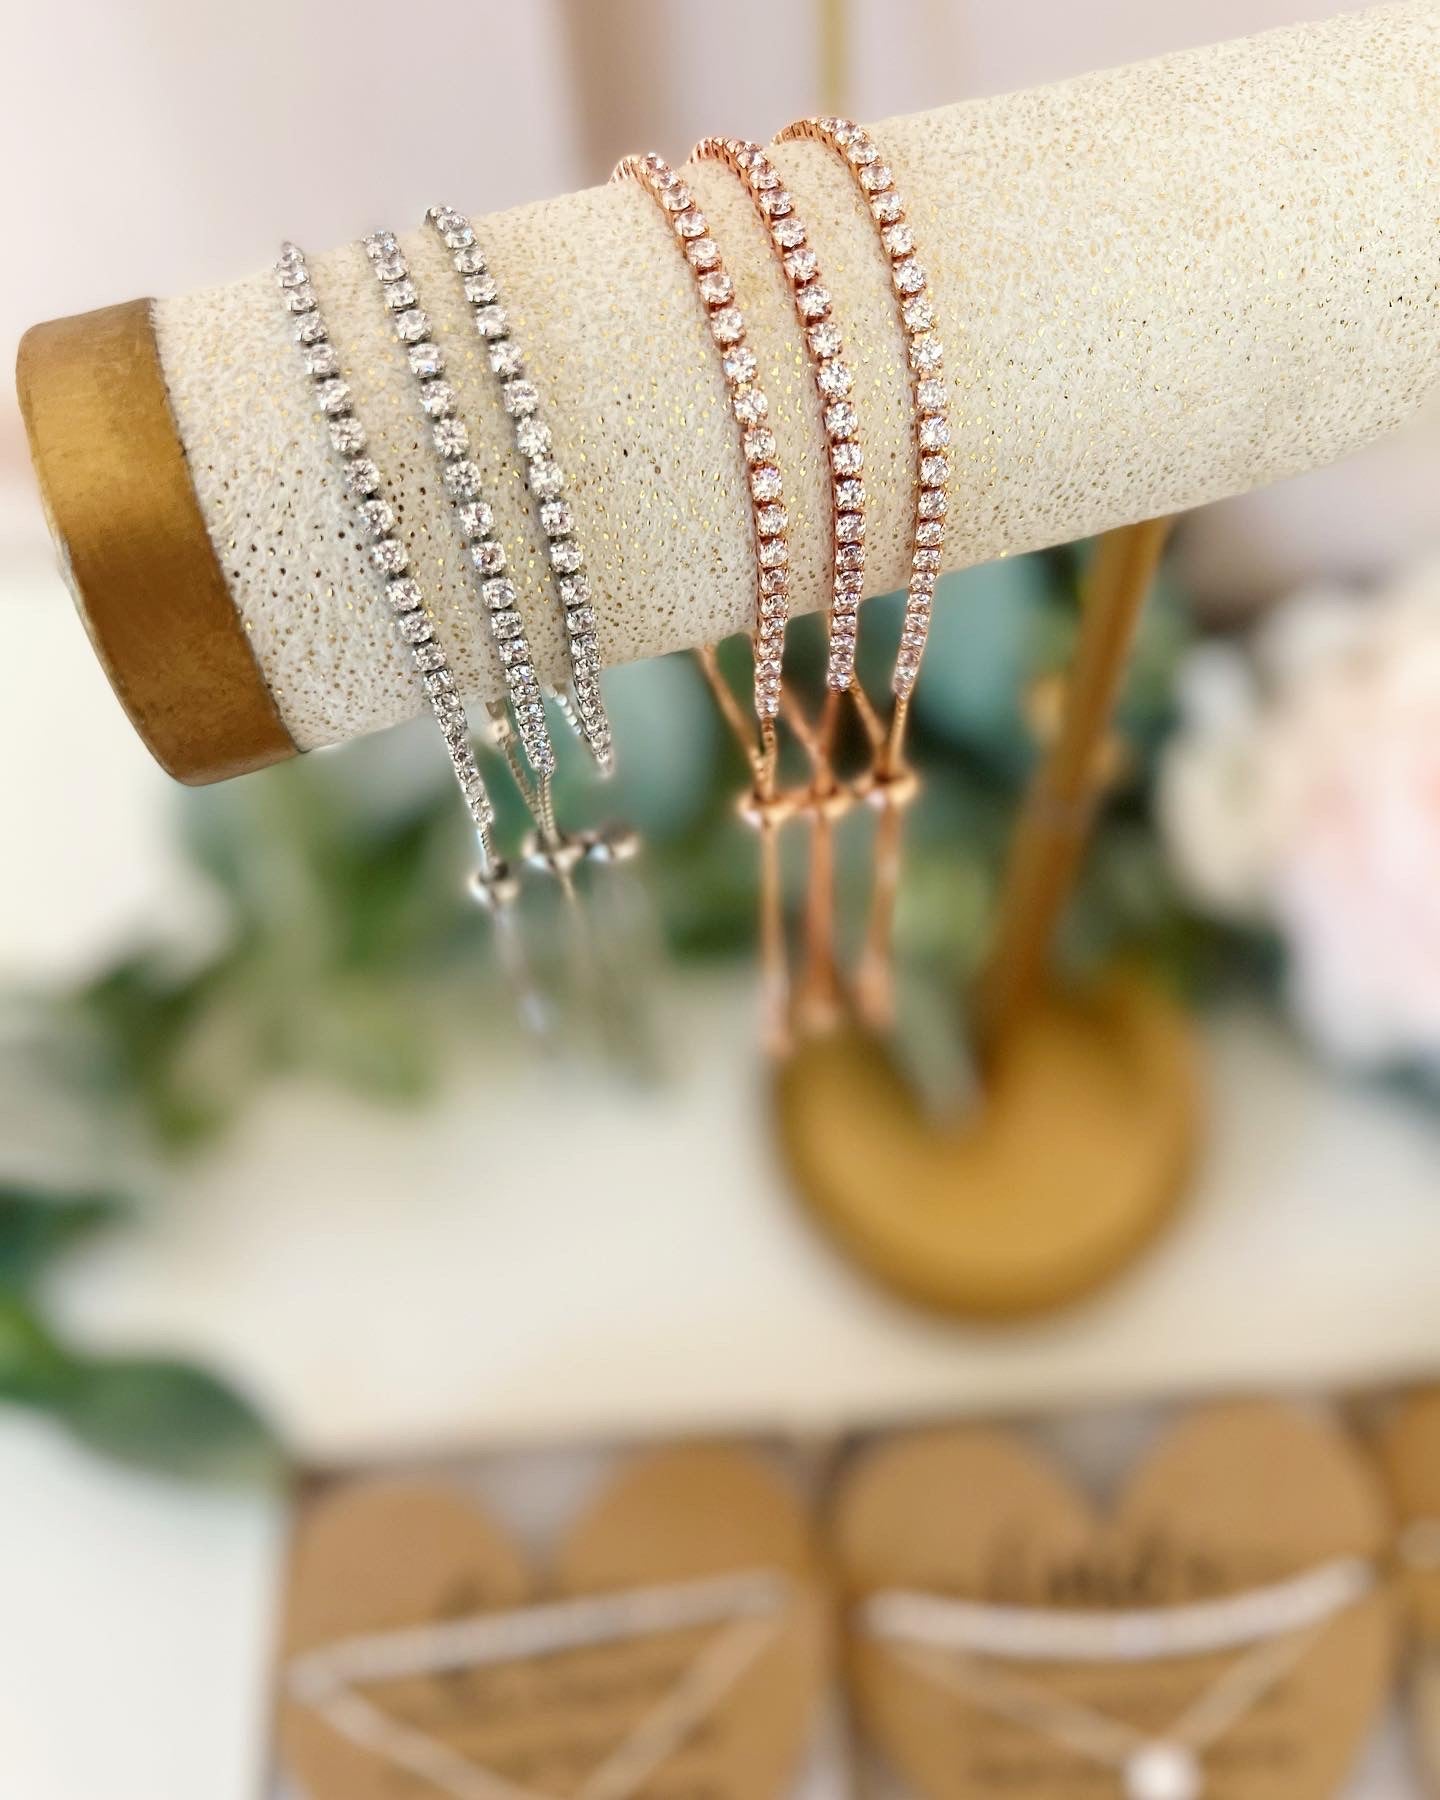 Bridesmaid Cubic Zircon Necklace & Matching Bracelet Set